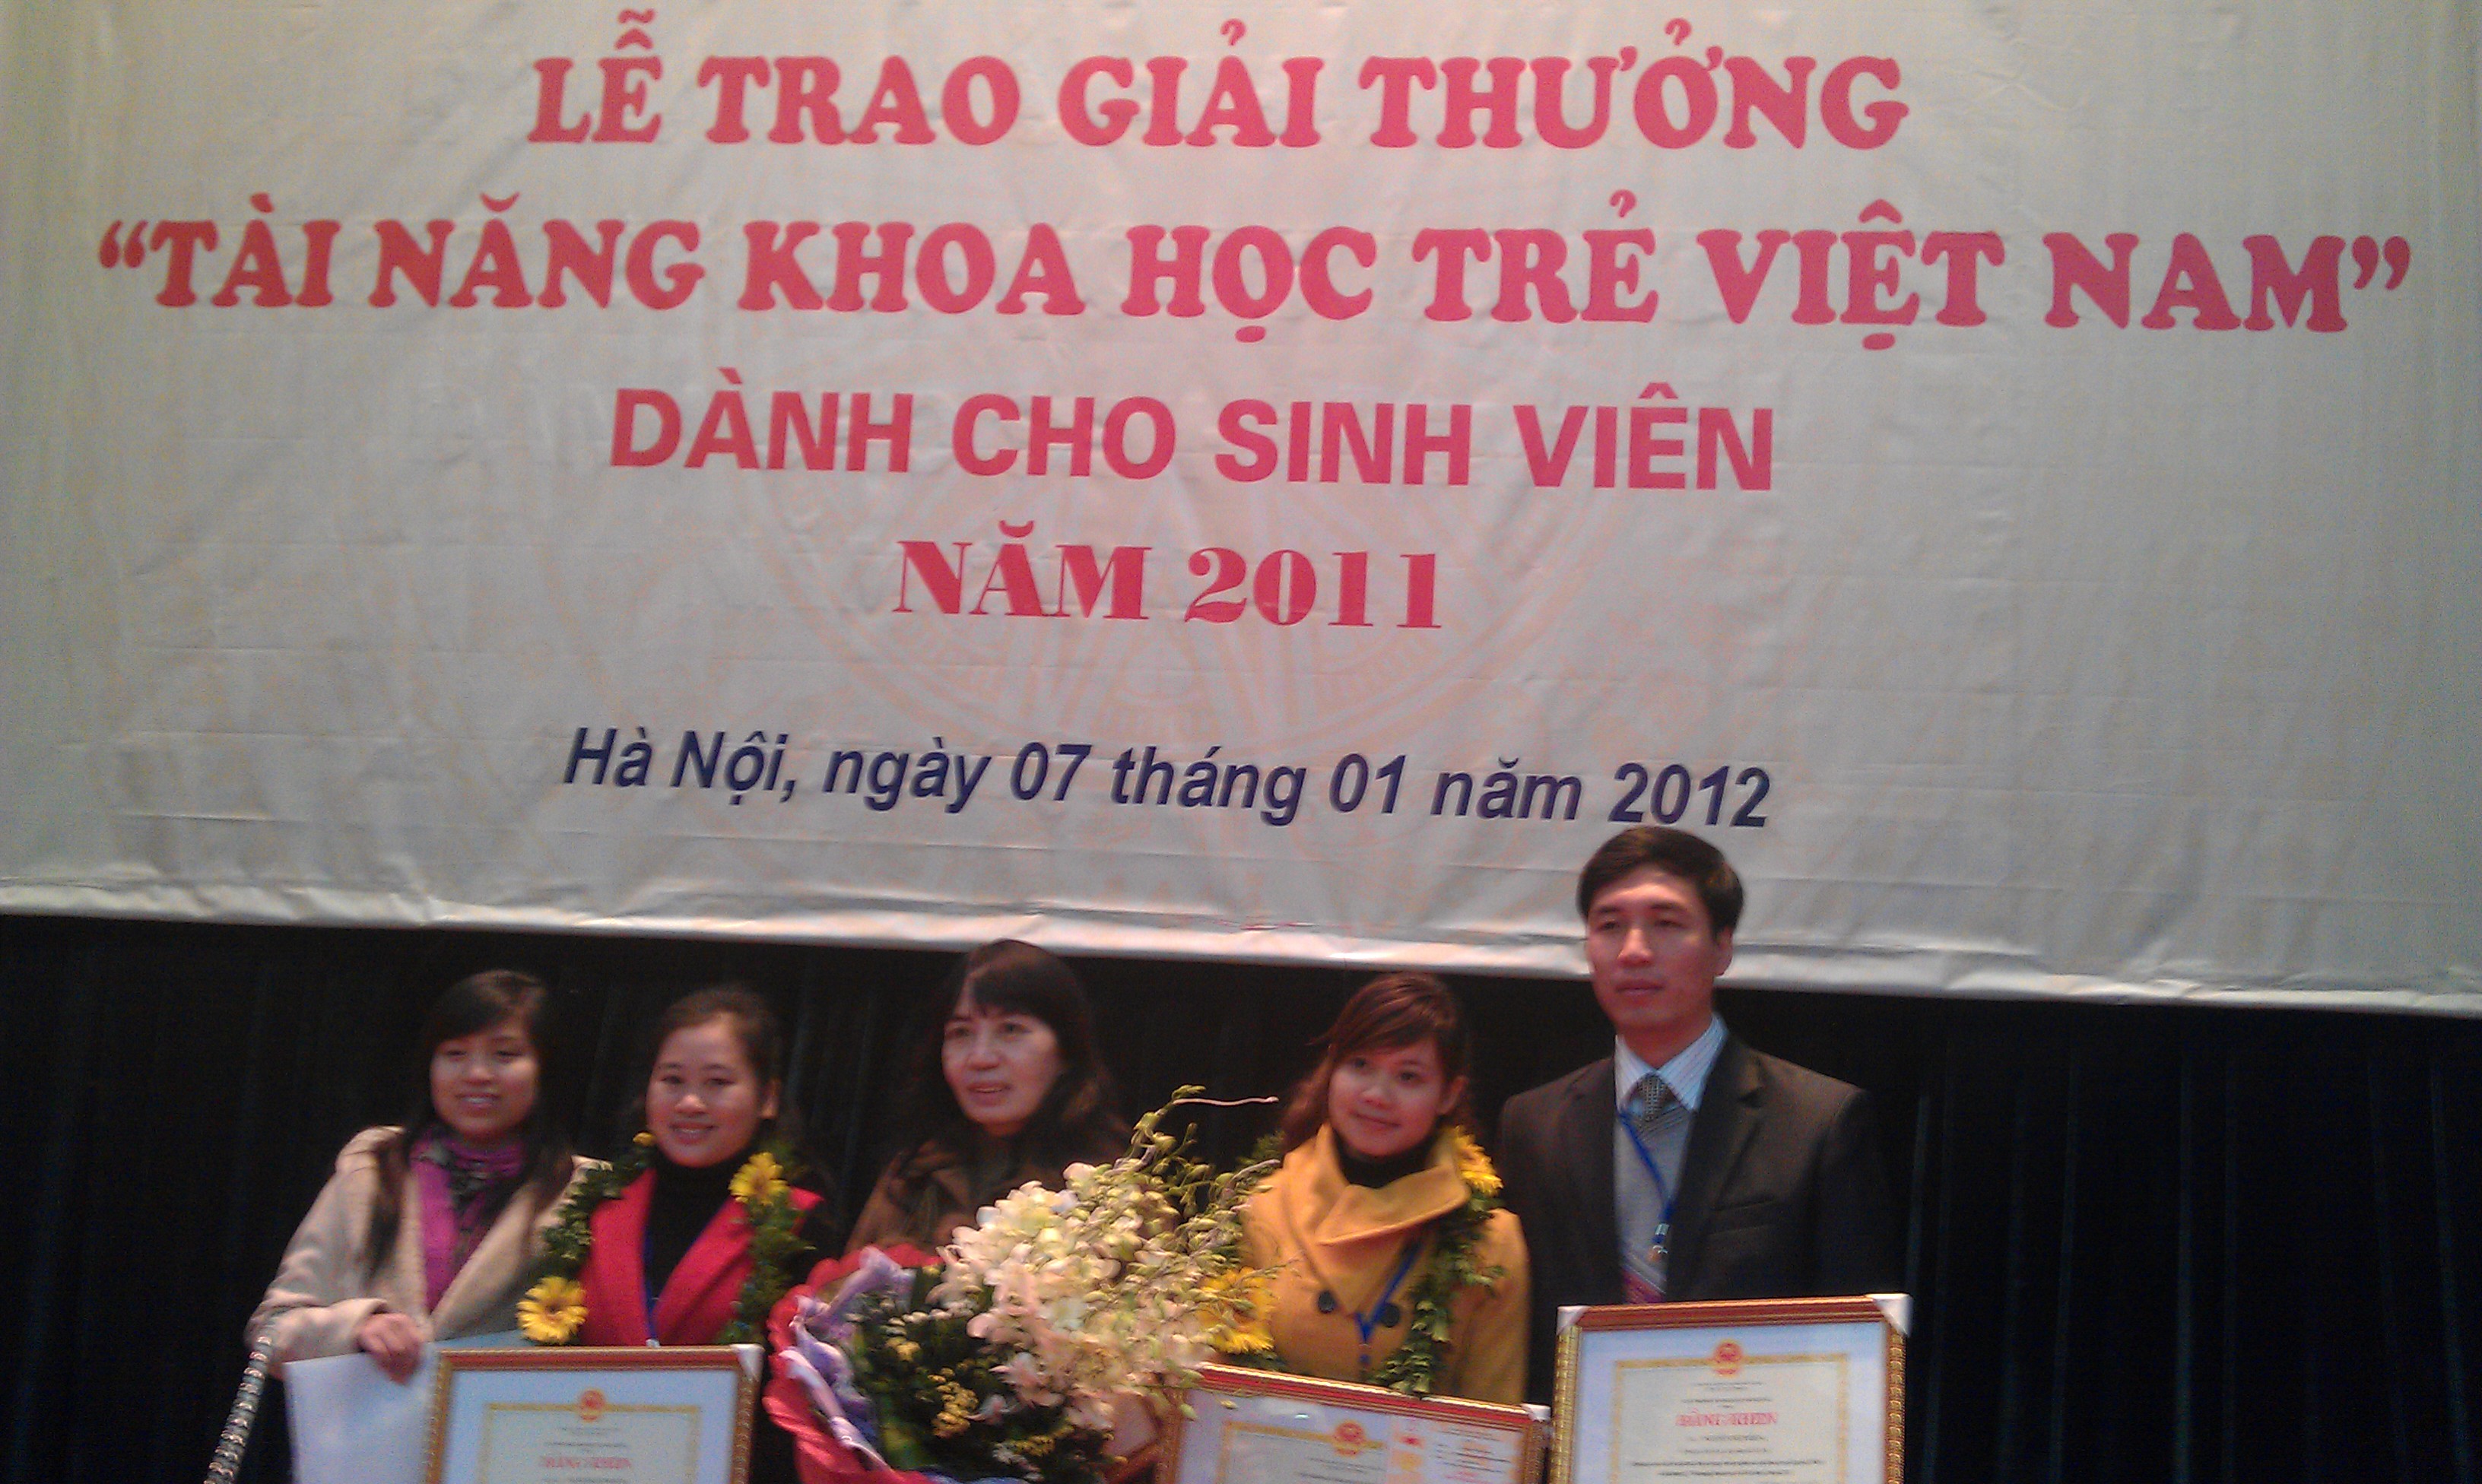 Sinh viên Trường ĐHSP Hà Nội đạt Giải Nhất Giải thưởng “Tài năng khoa học trẻ Việt Nam năm 2011